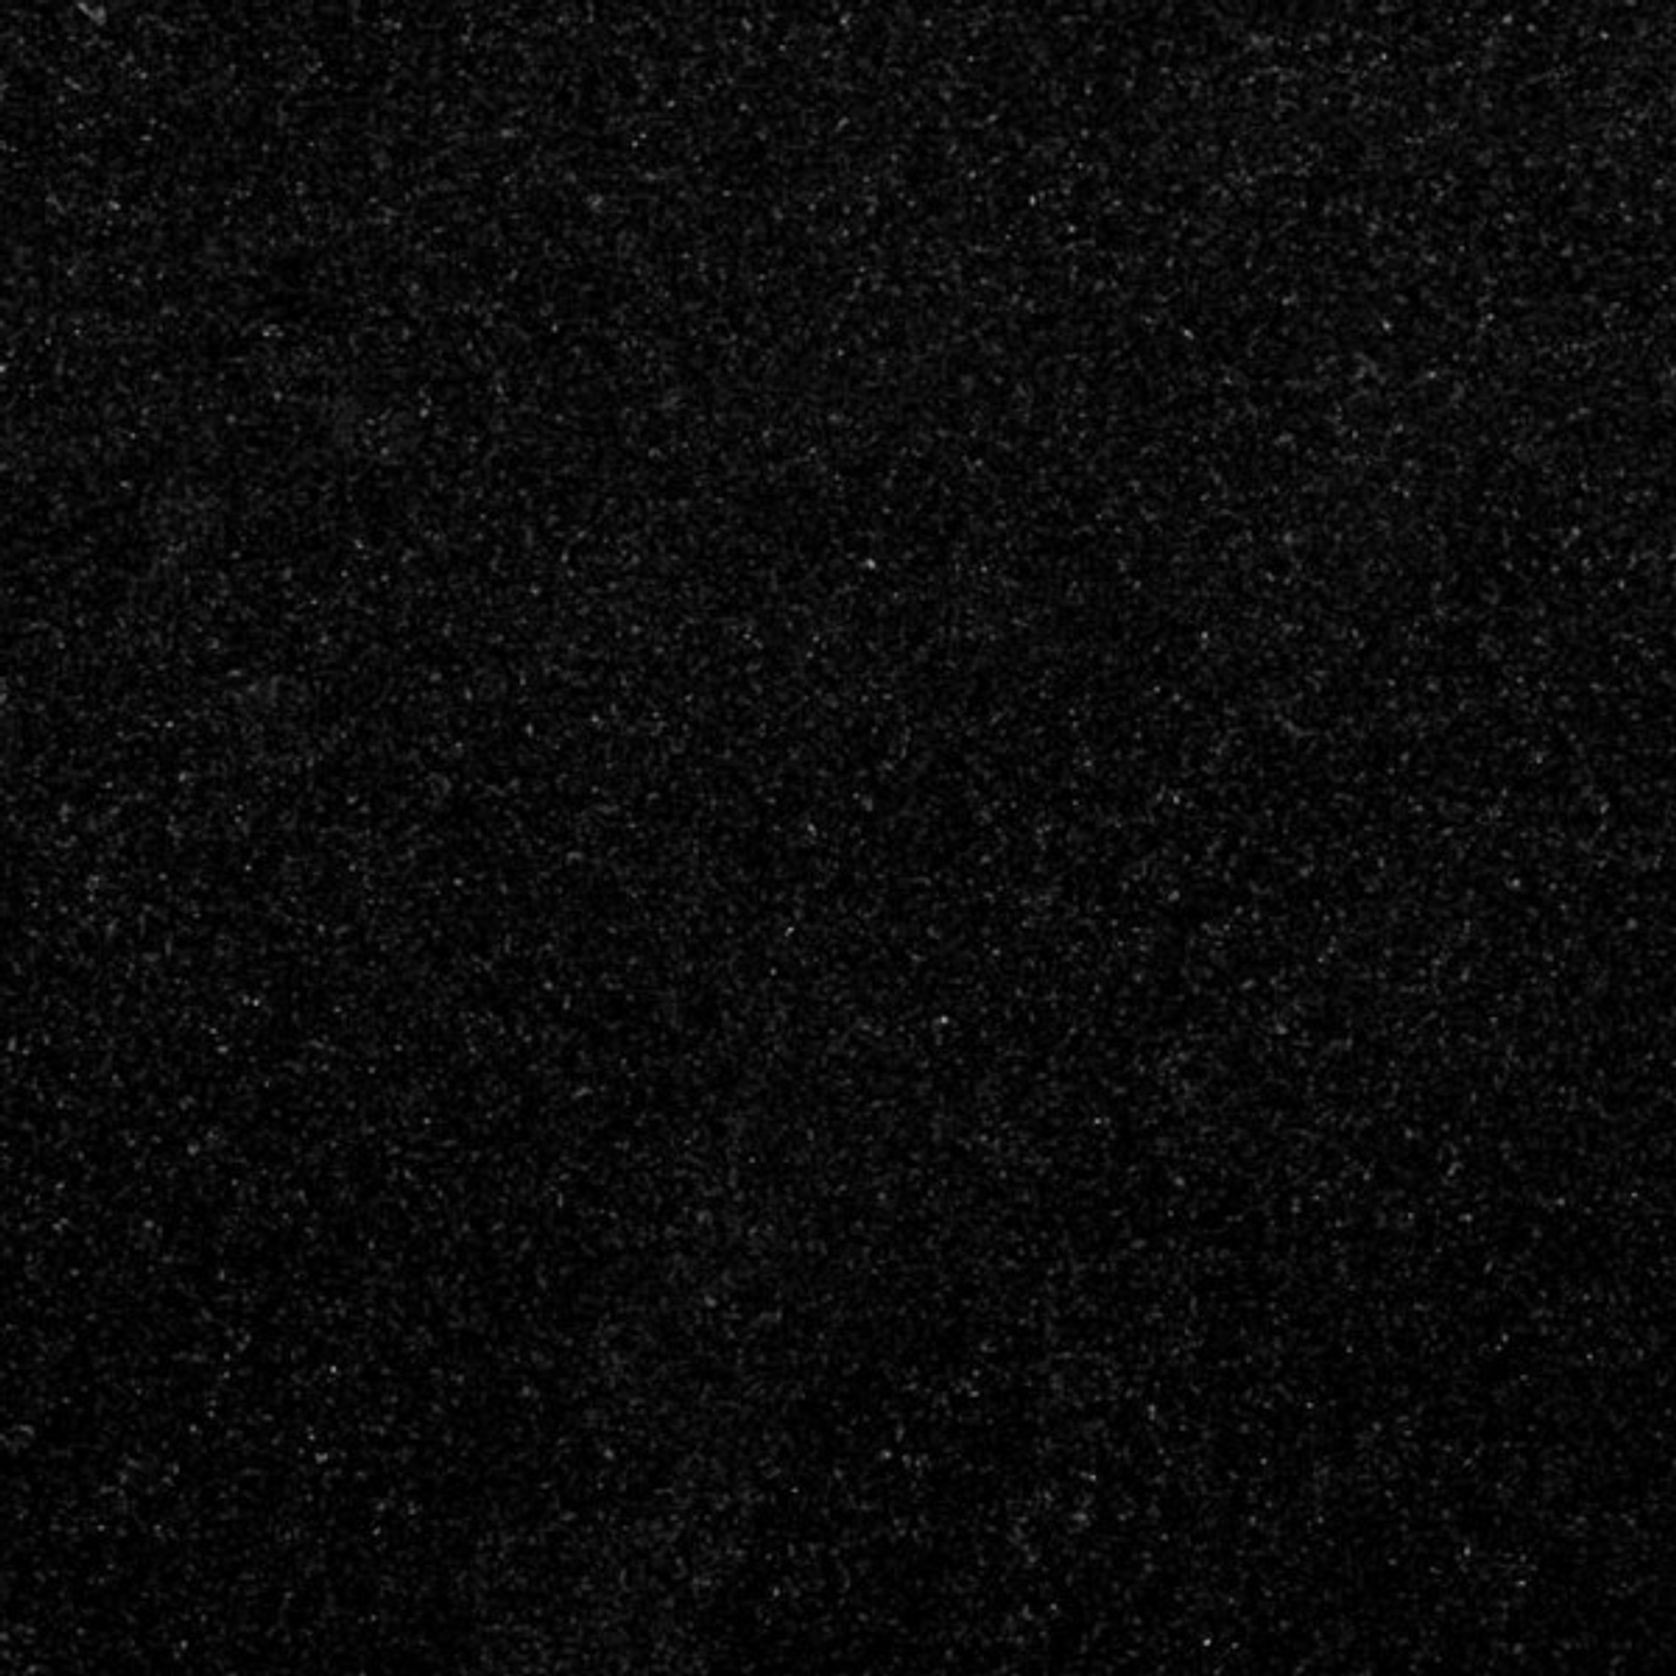 Absolute Black Granite gallery detail image